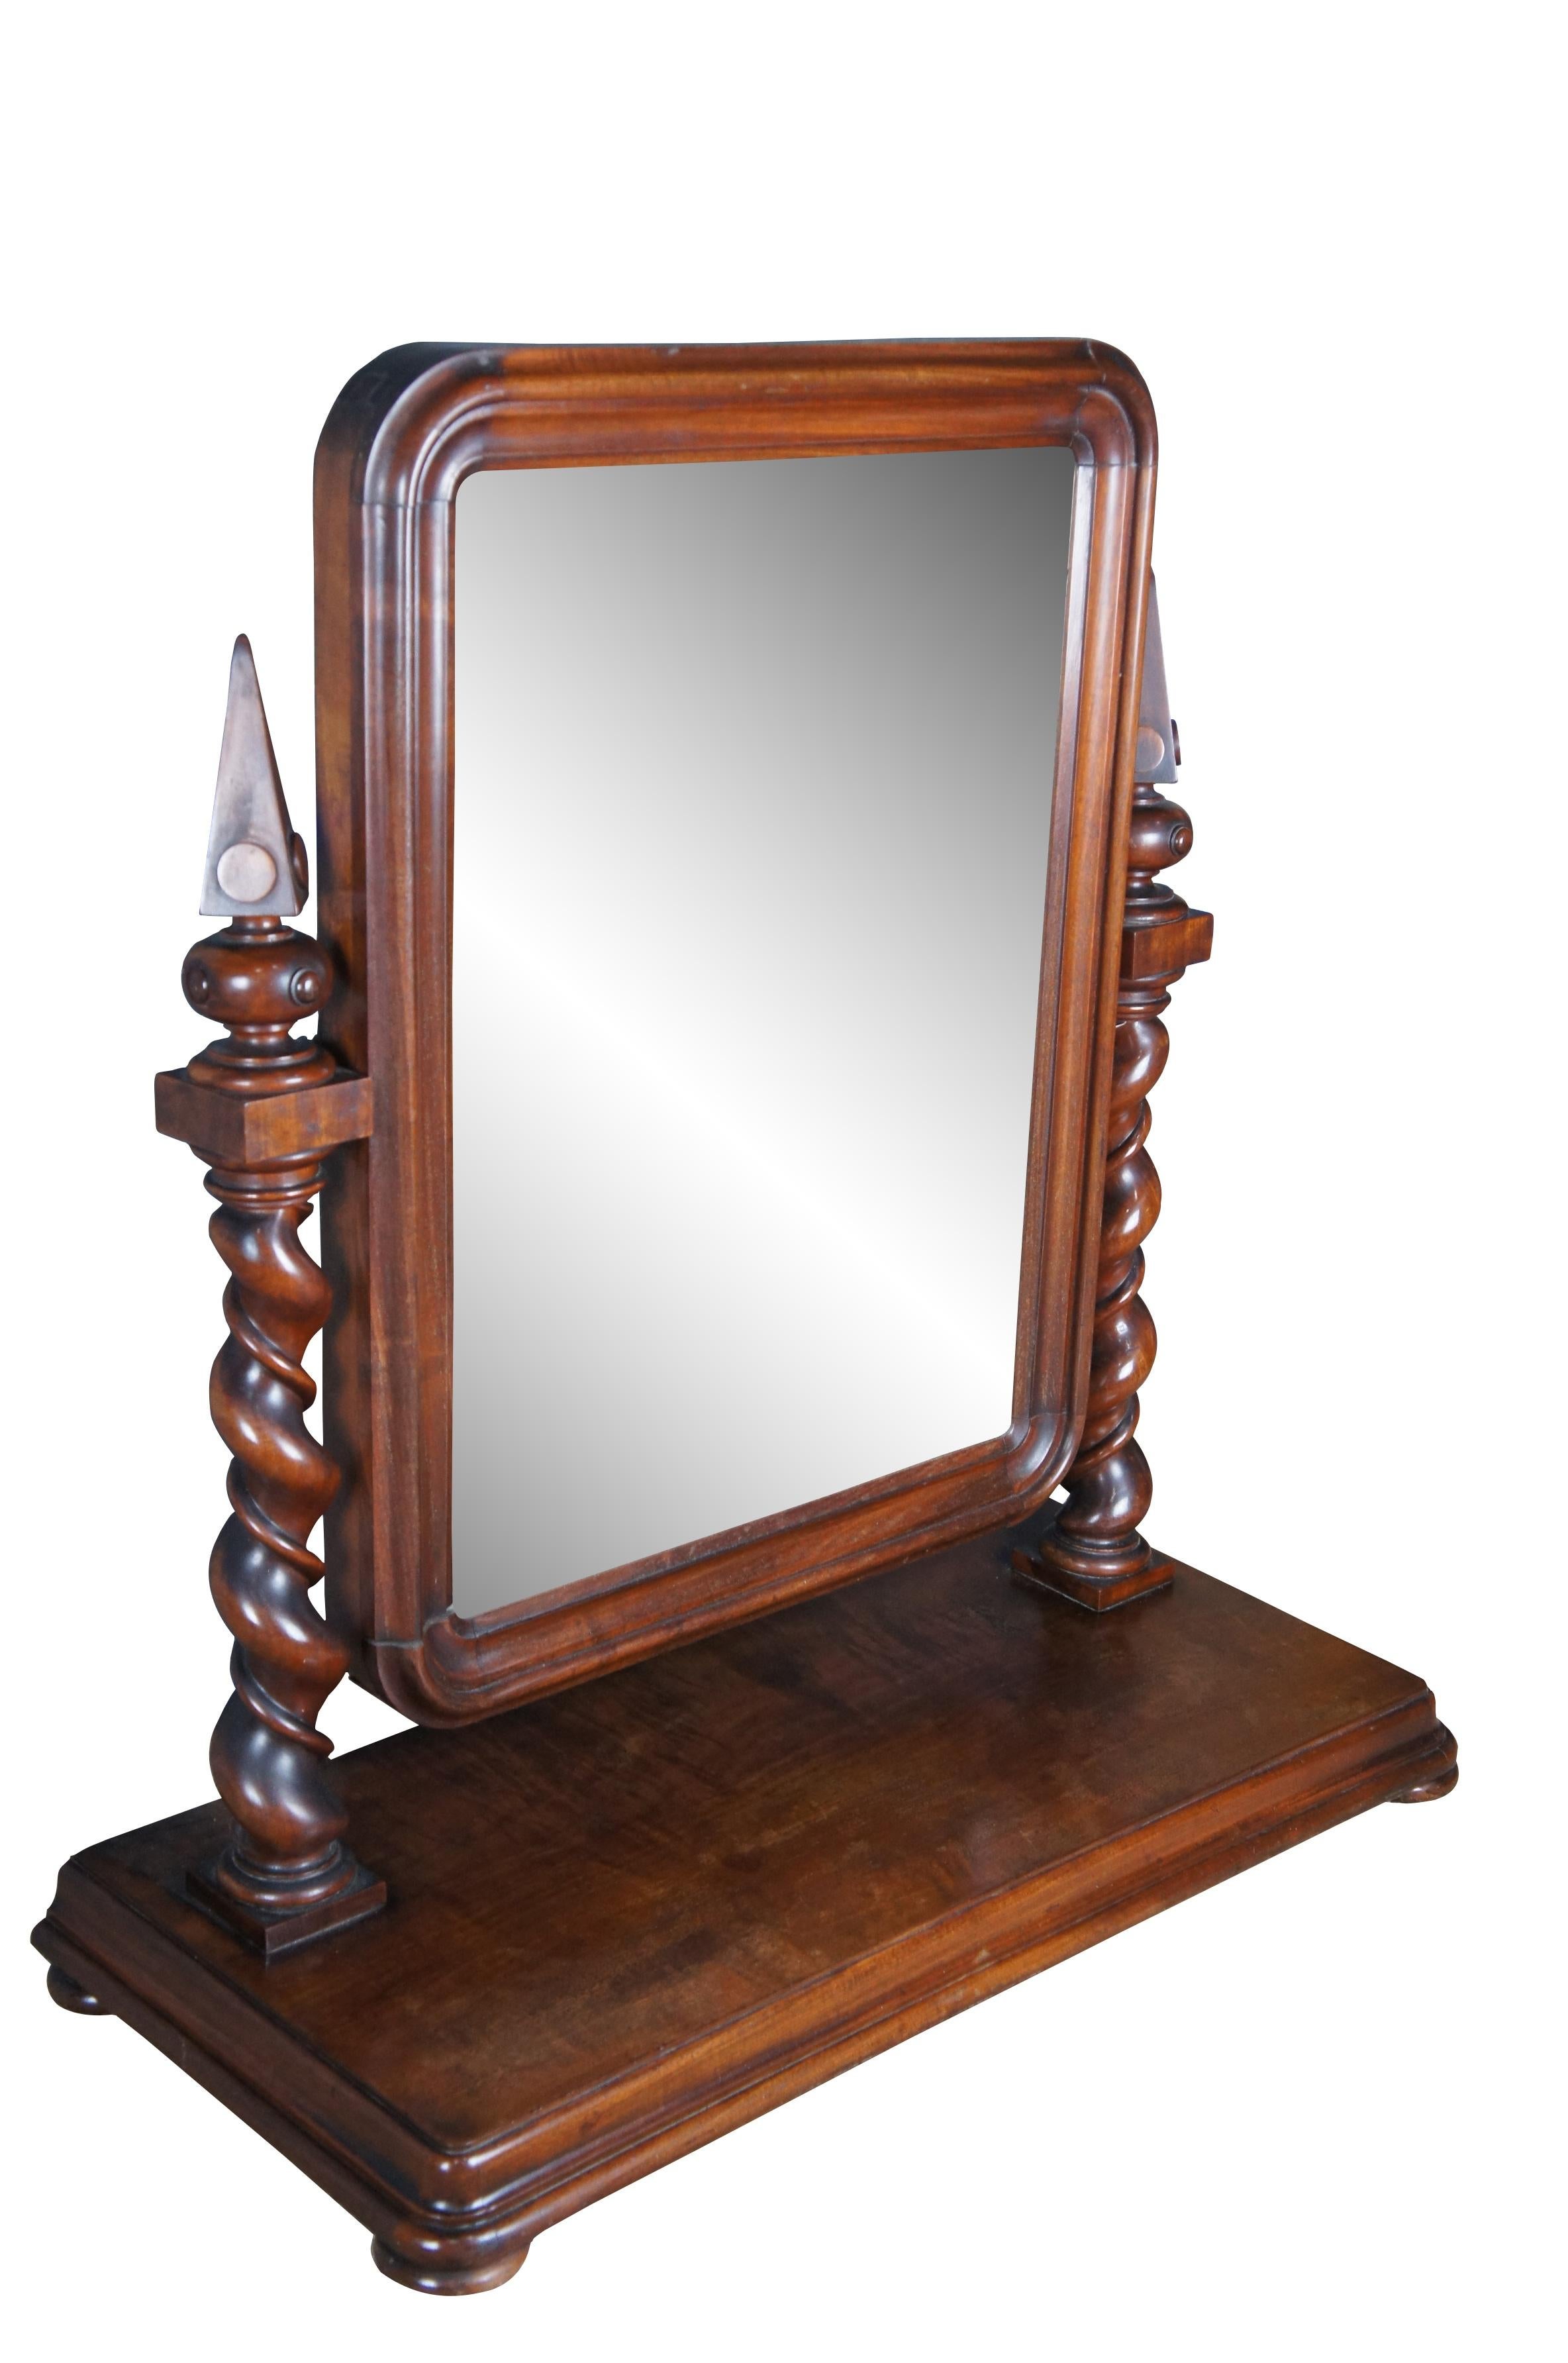 Beeindruckende antike 19. Jahrhundert (ca. 1880er Jahre) Englisch Empire Gentleman's Dressing Spiegel. Gefertigt aus Mahagoni mit einem abgeschrägten Holzrahmen, der von außergewöhnlichen Gerstenstangen mit pyramidenförmigen Endstücken getragen